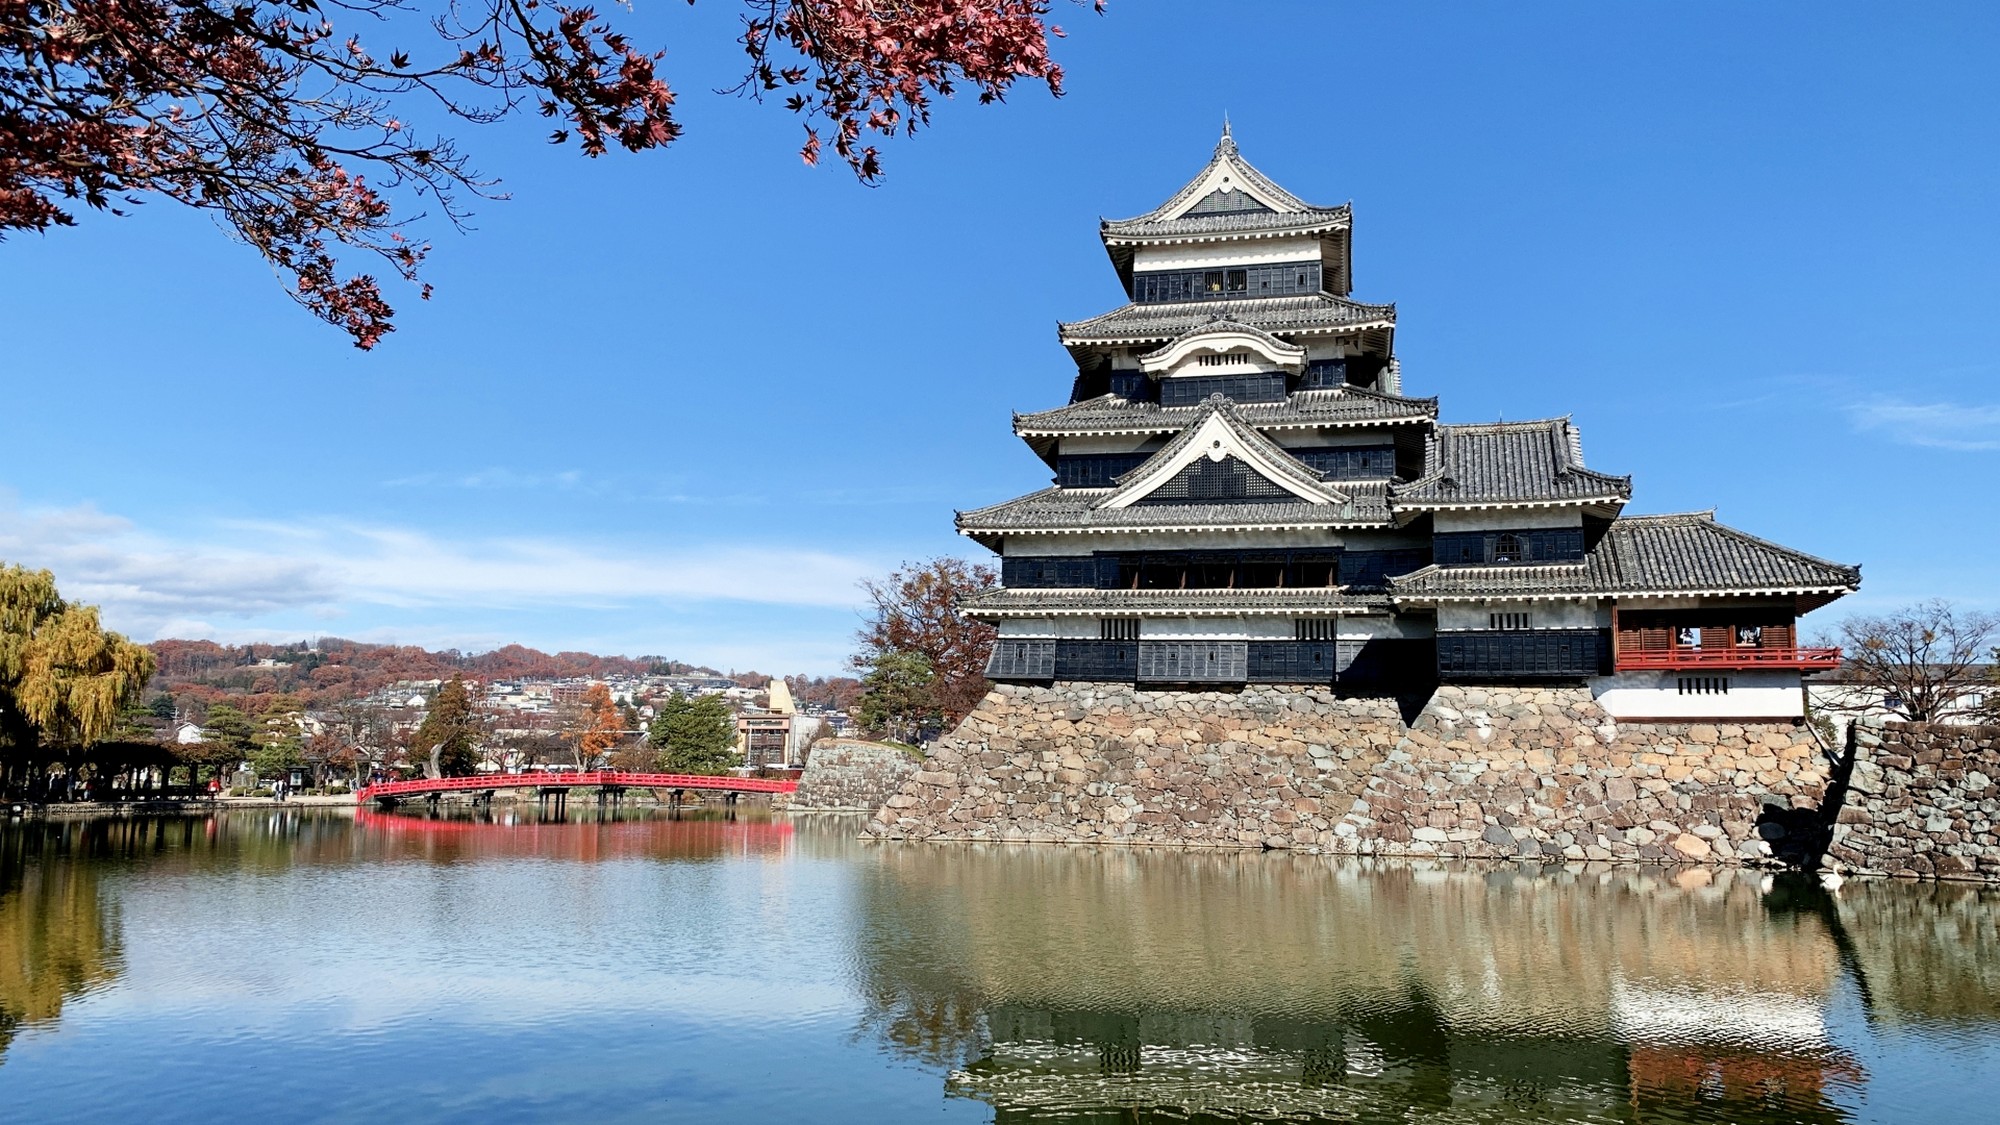 国宝「松本城」は現存する五重六階の天守としては日本最古の建造物。季節折々の景観に圧倒されます。